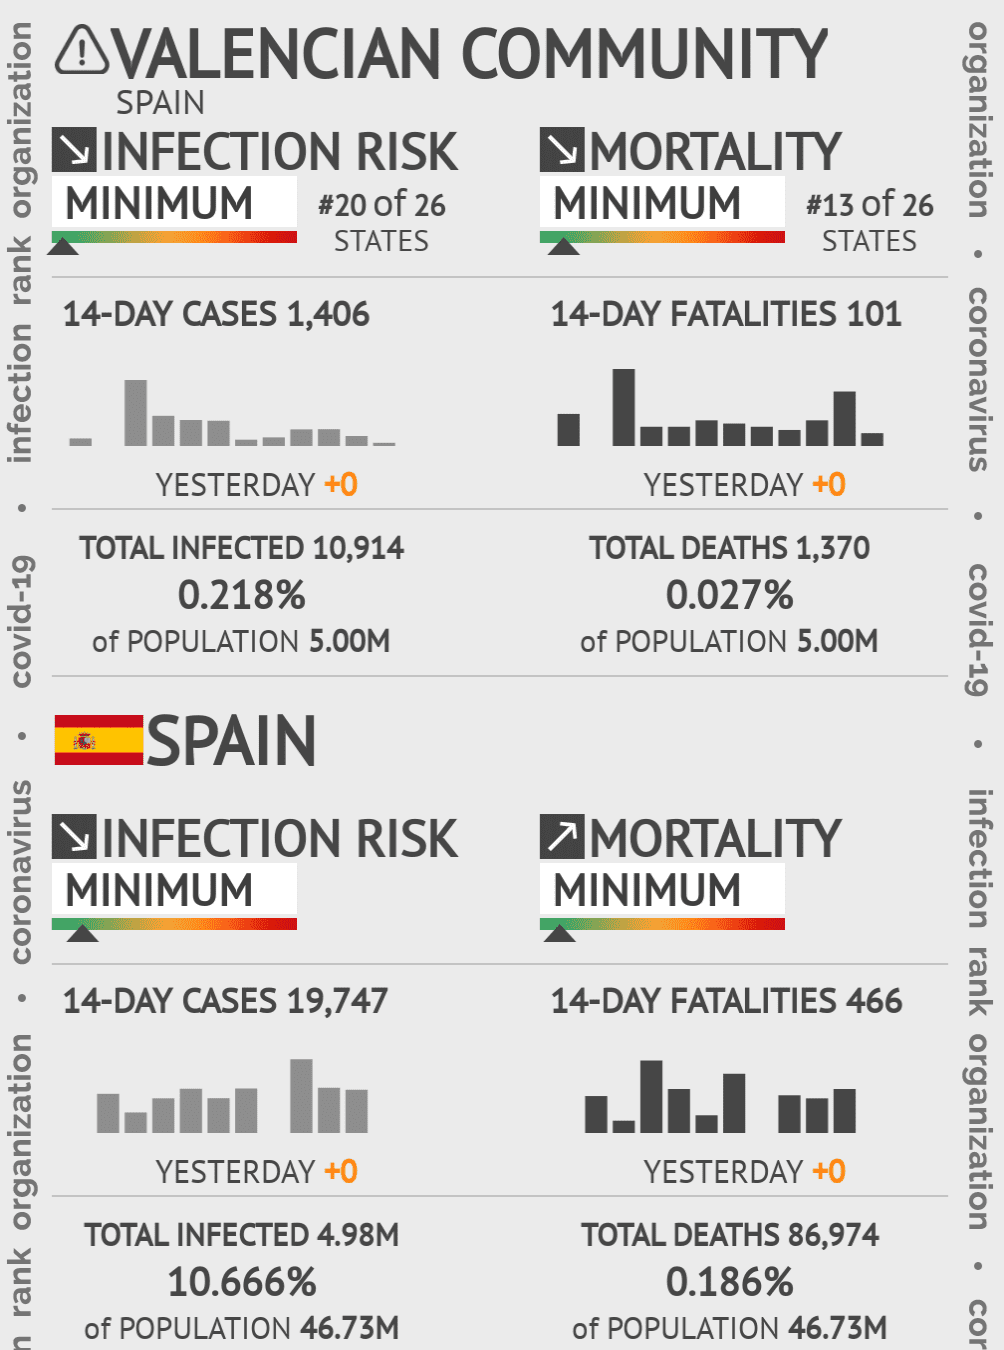 Valencian Community Coronavirus Covid-19 Risk of Infection on May 22, 2020